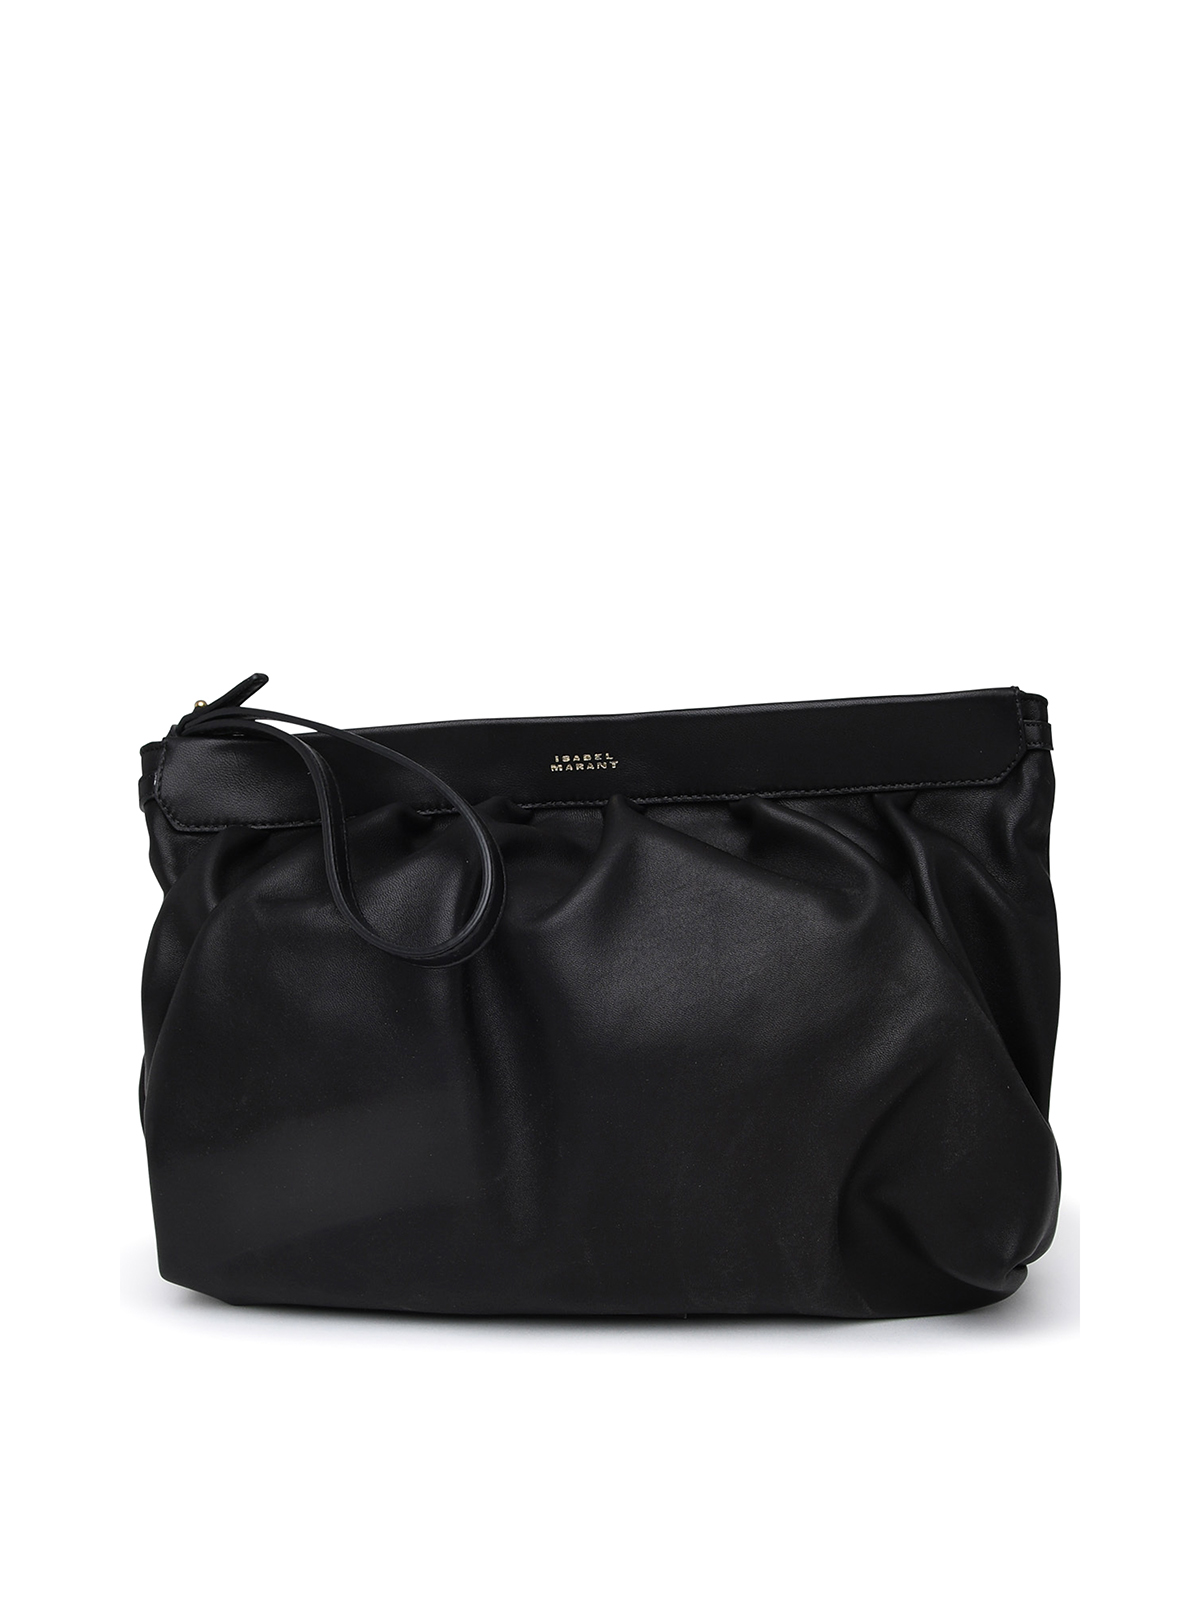 Isabel Marant Luz Bag In Black Leather